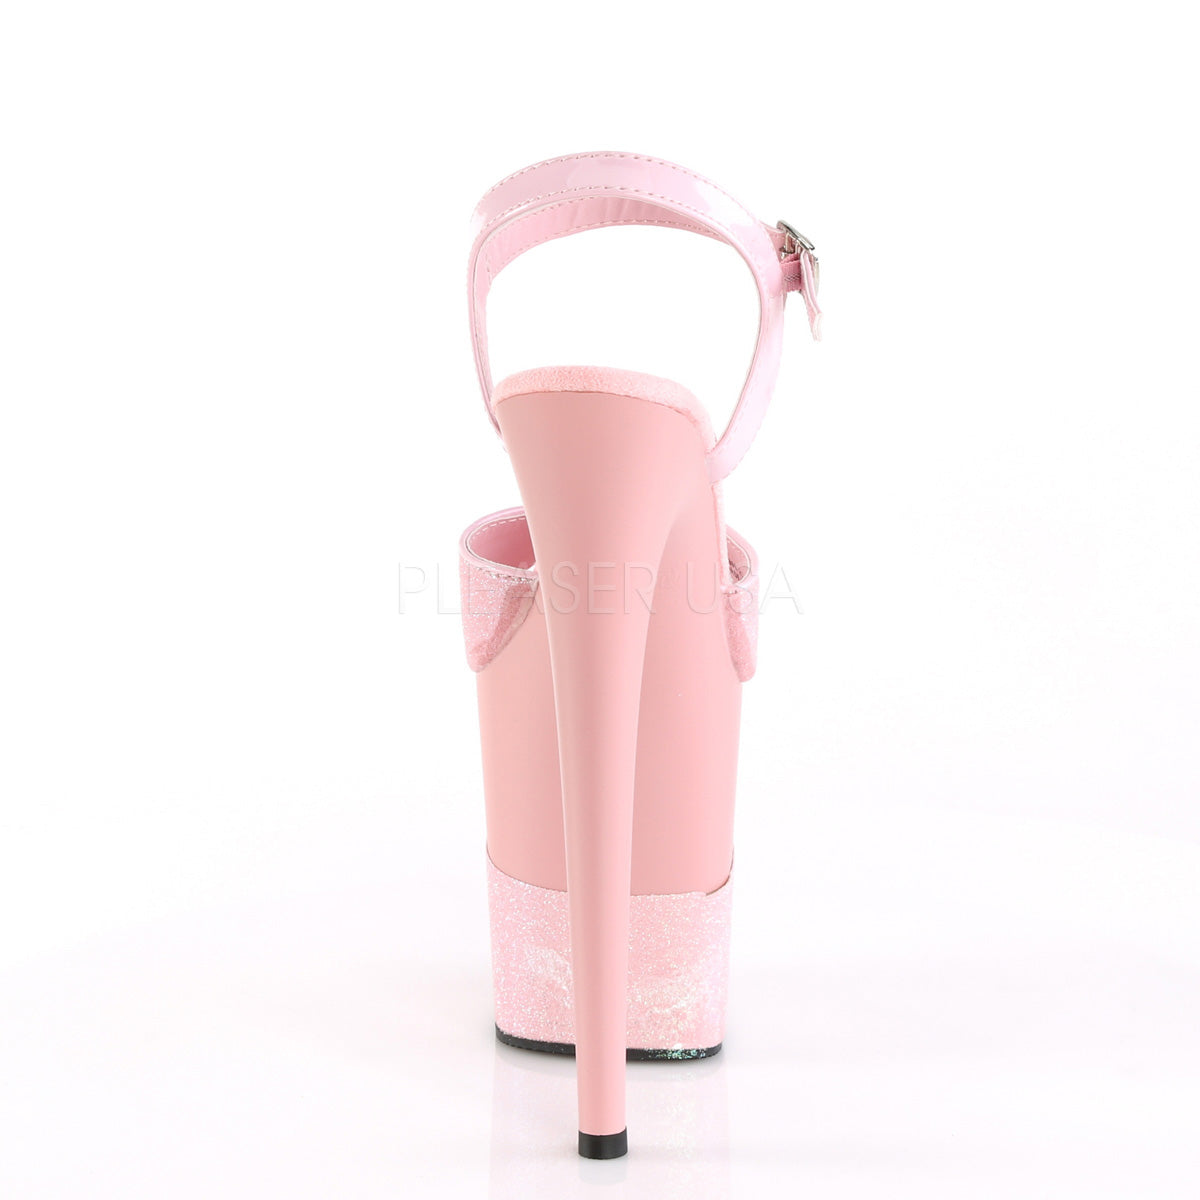 8 Inch Baby Pink Platform Heels ( Flamingo 809-2G )